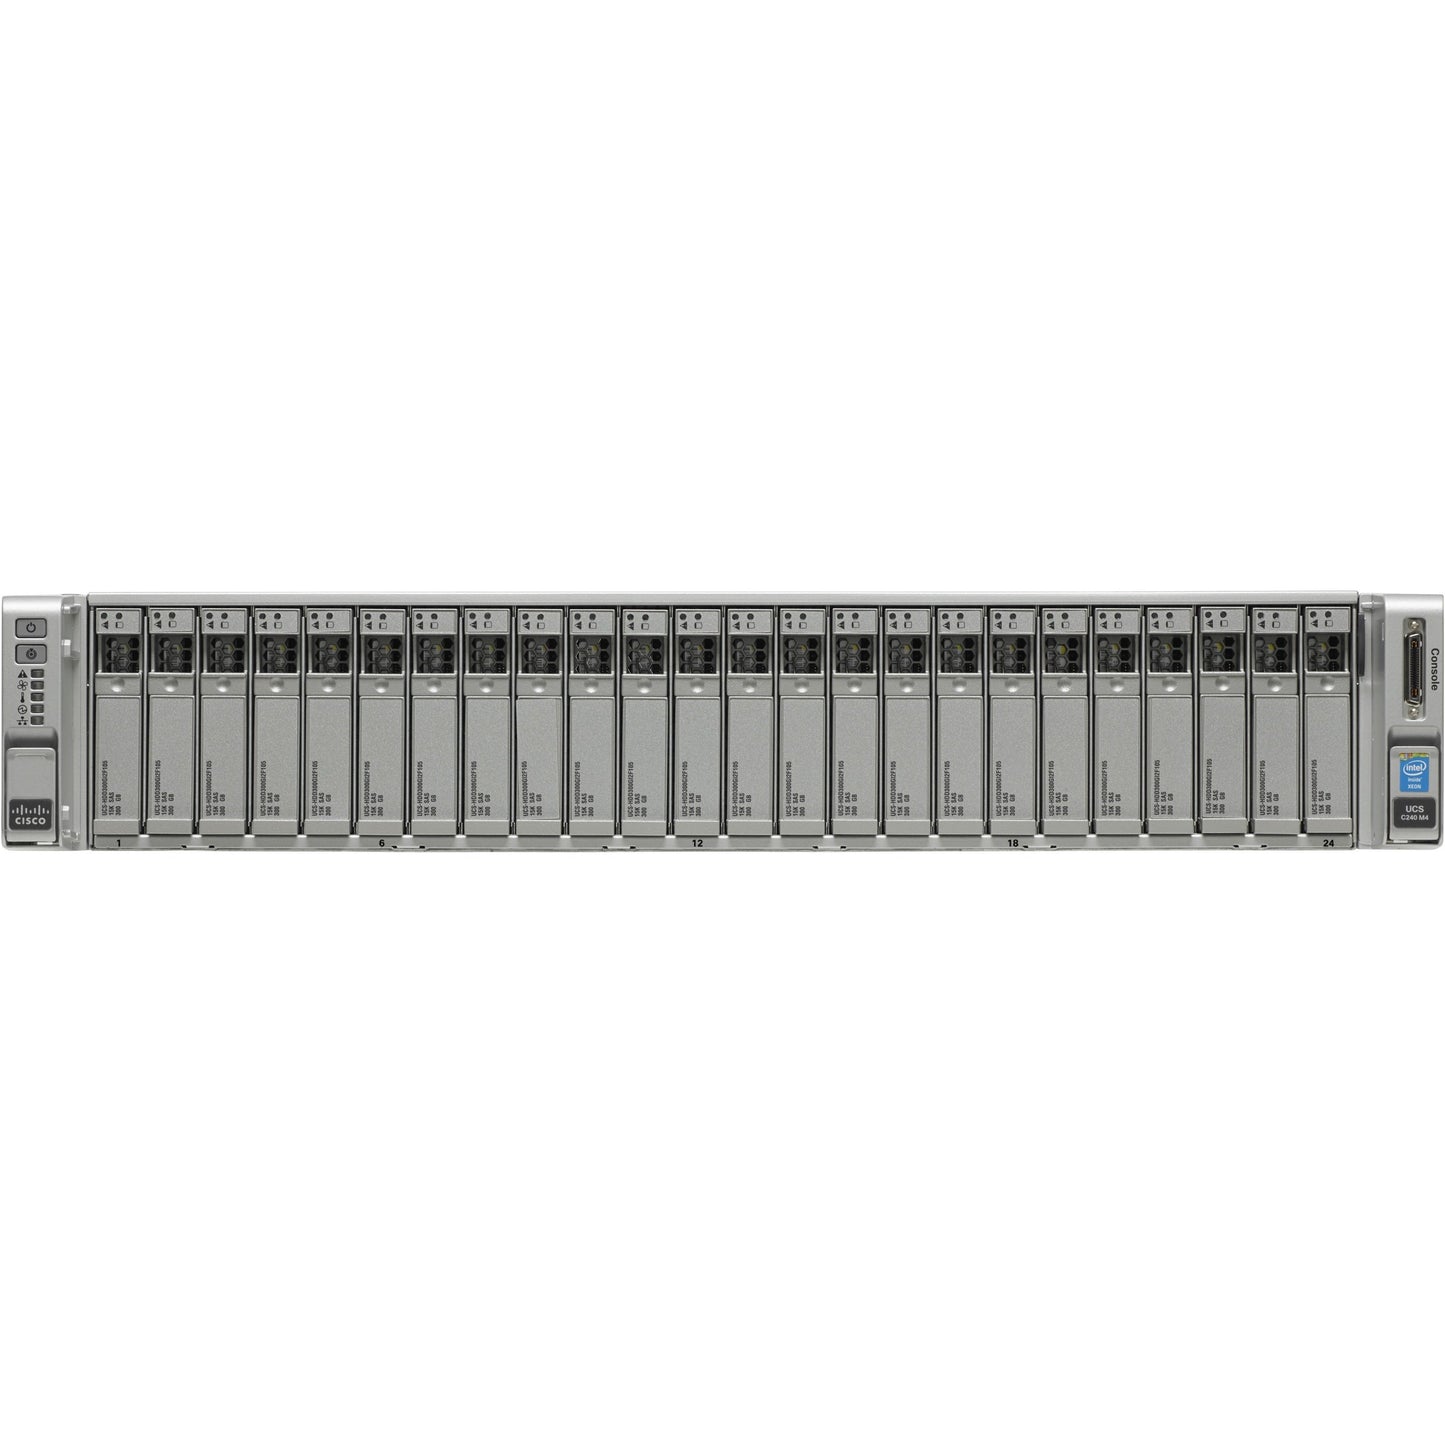 Cisco C240 M4 2U Rack Server - 2 x Intel Xeon E5-2637 v3 3.50 GHz - 256 GB RAM - 12Gb/s SAS Serial ATA Controller